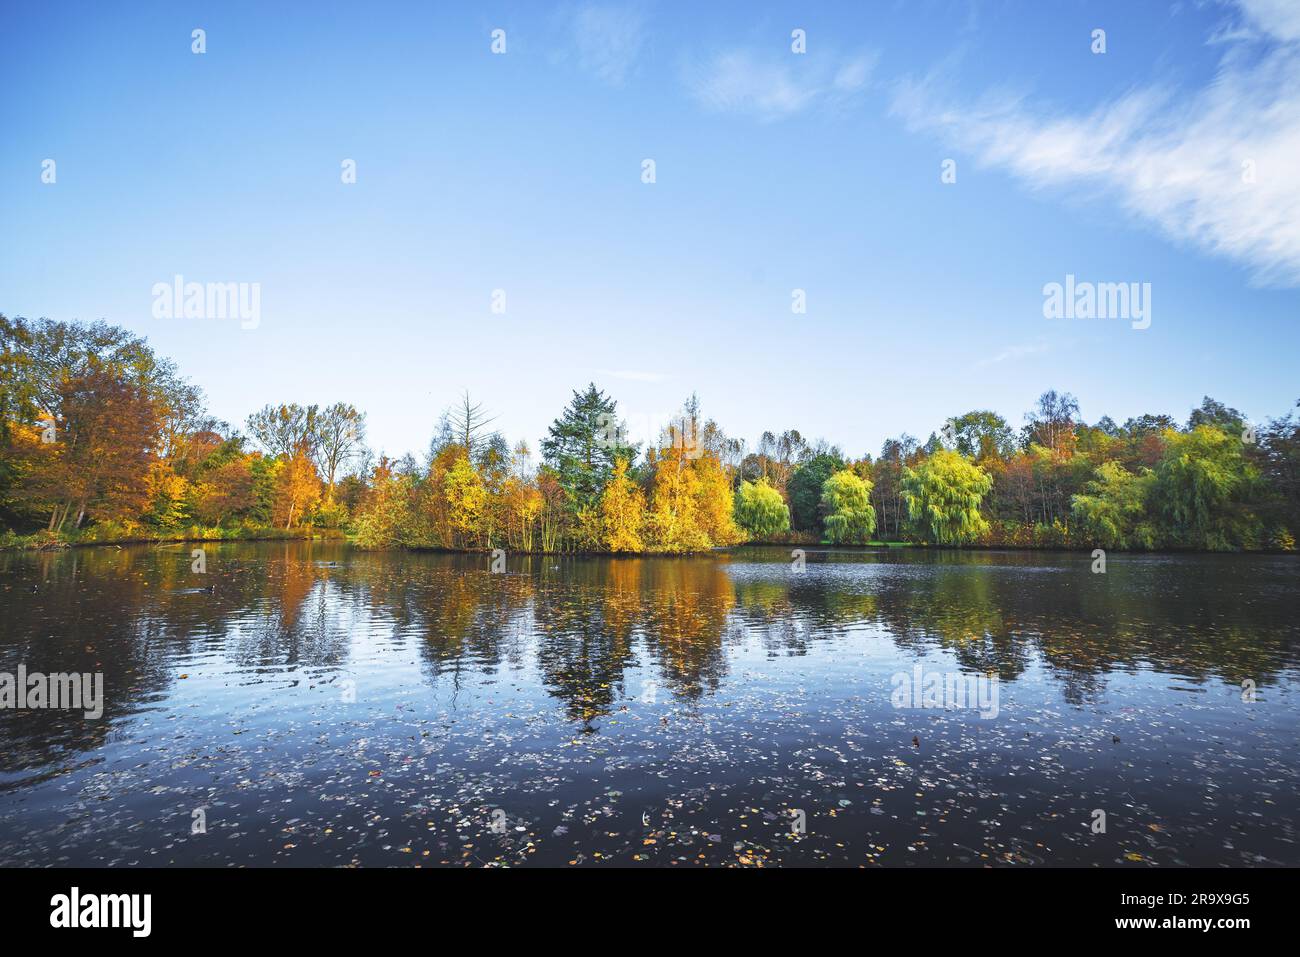 Paesaggio autunnale con un lago e alberi in autunno bello e mite i colori di giallo e arancione in autunno con foglie di autunno nell'acqua scura Foto Stock